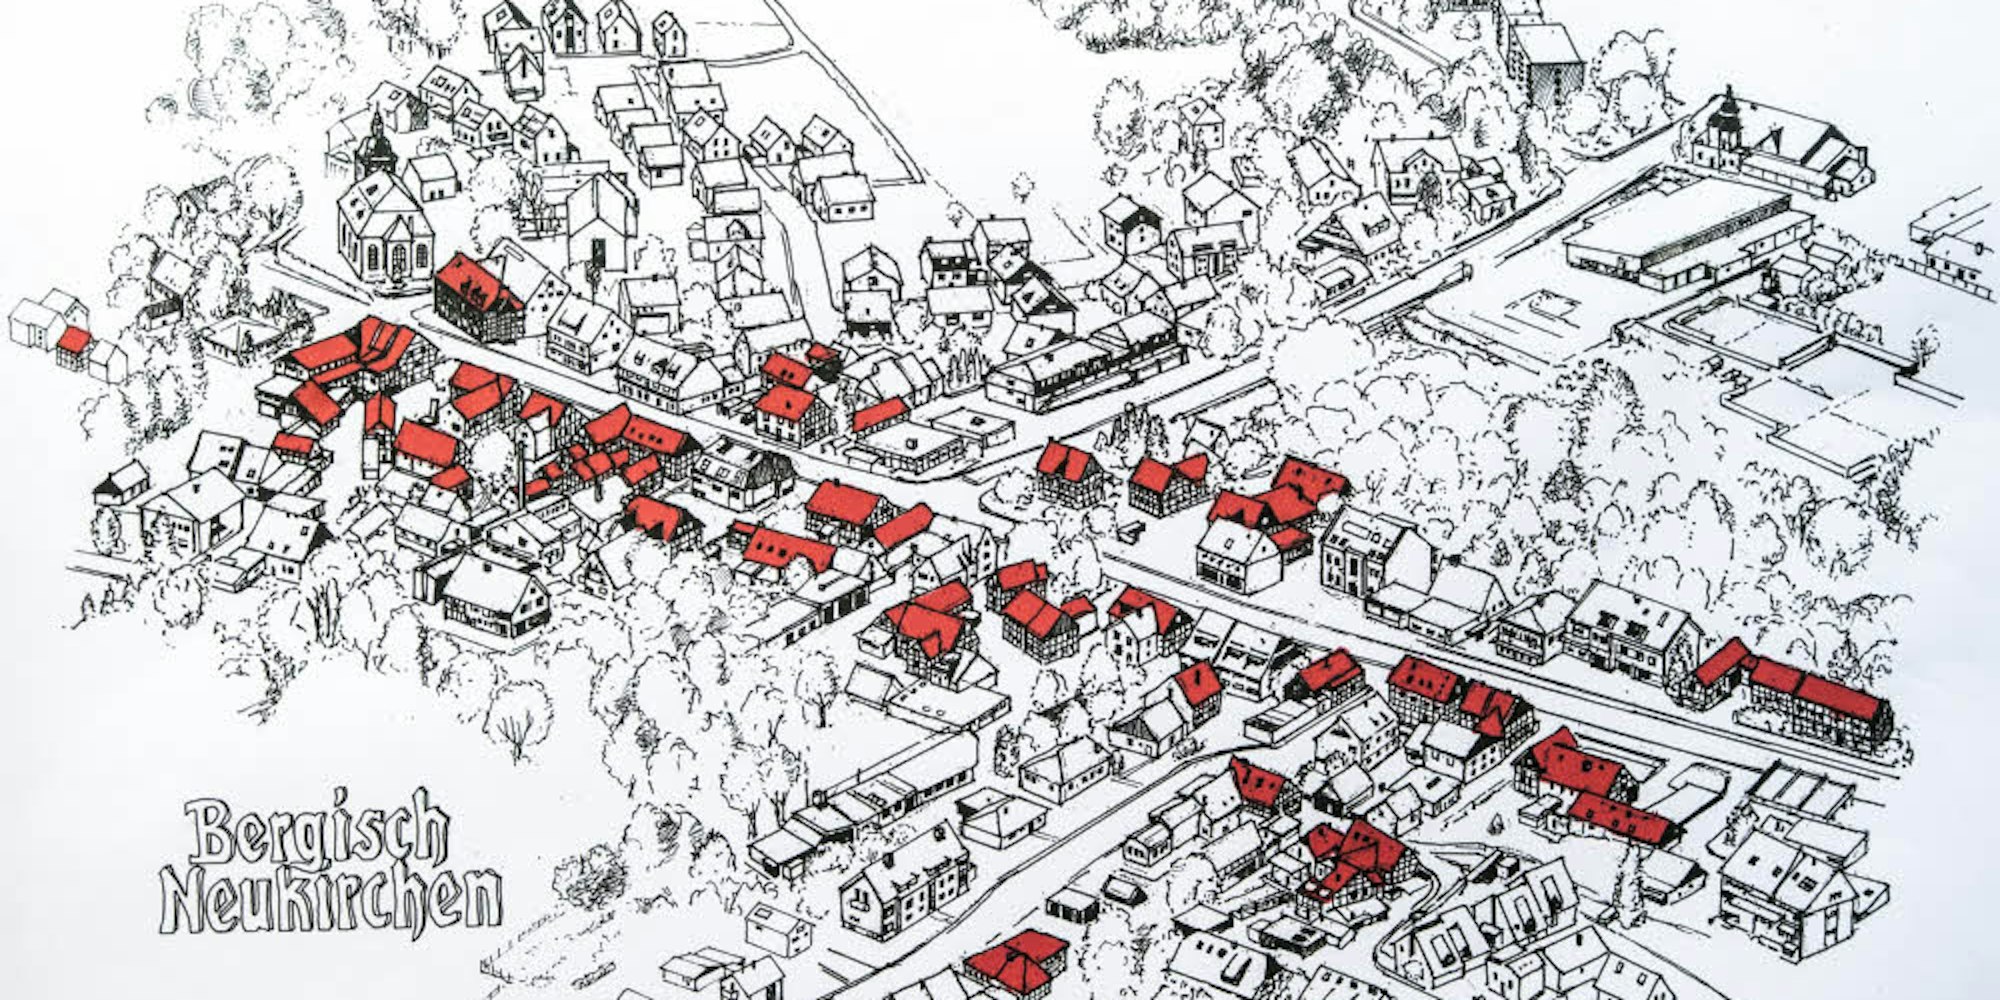 Eine Luftbild-Zeichnung vom Hauptort Bergisch Neukirchen, bei der alle Fachwerkhäuser mit roten Dächern markiert wurden